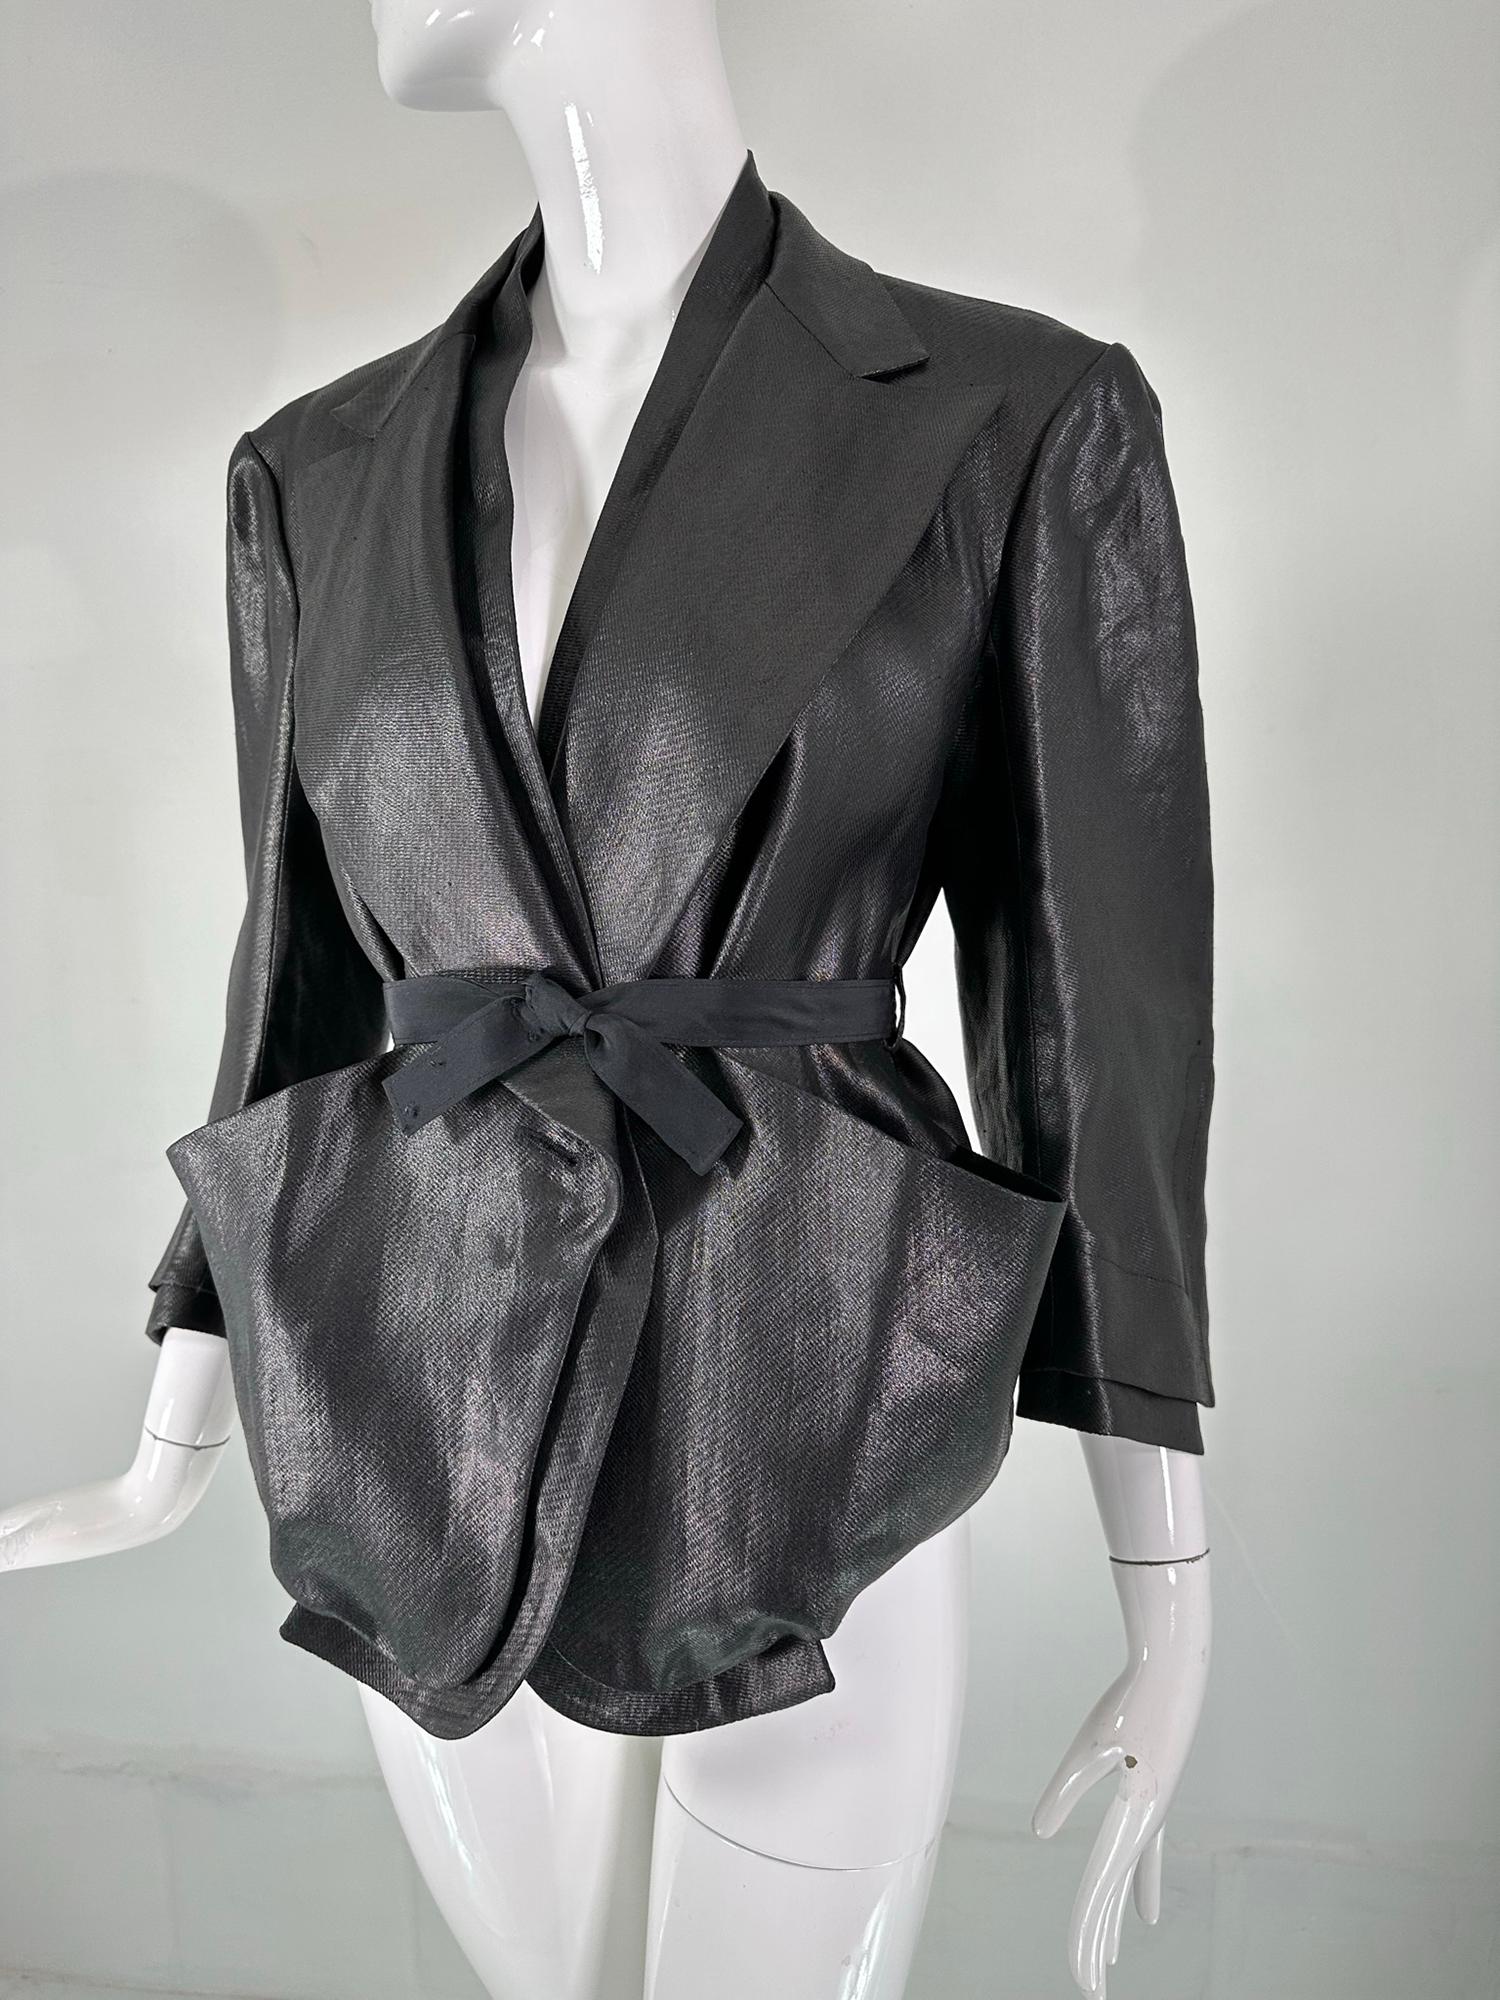 Sonia Rykiel lin glacé noir, grande poche, parements boutonnés, veste cropped ceinturée. Il s'agit d'une veste spéciale avec beaucoup de style. Le tissu a l'aspect du cuir, mais en y regardant de plus près, on peut voir la beauté du processus de